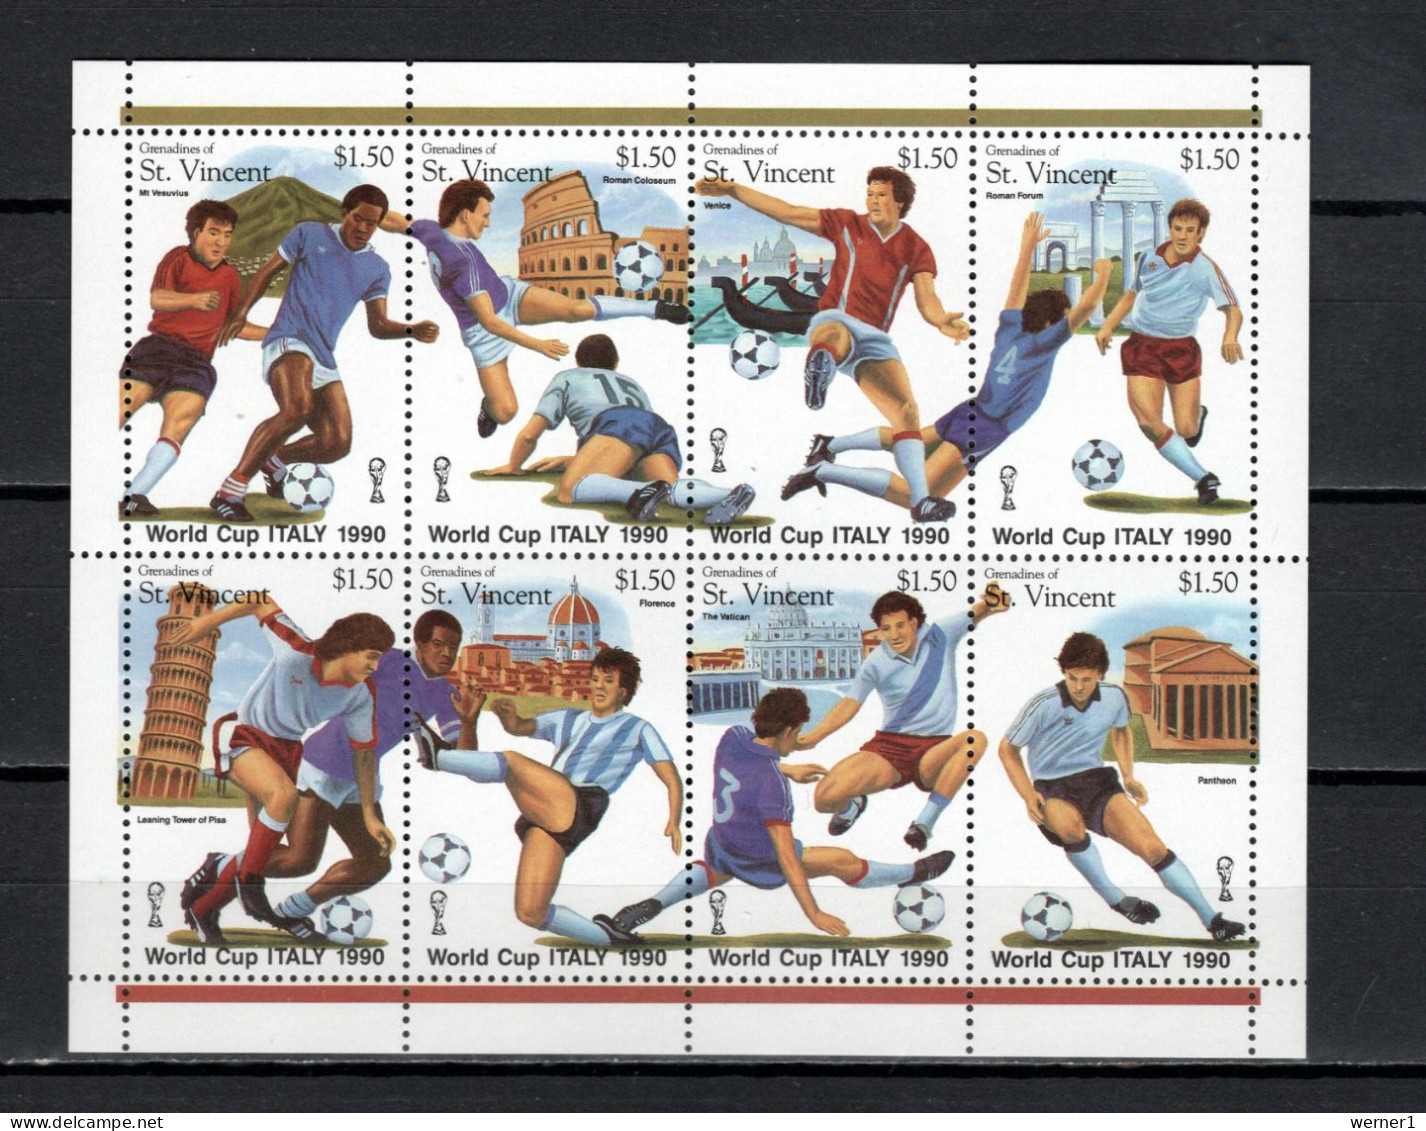 St. Vincent - Grenadines 1989 Football Soccer World Cup Sheetlet MNH - 1990 – Italie